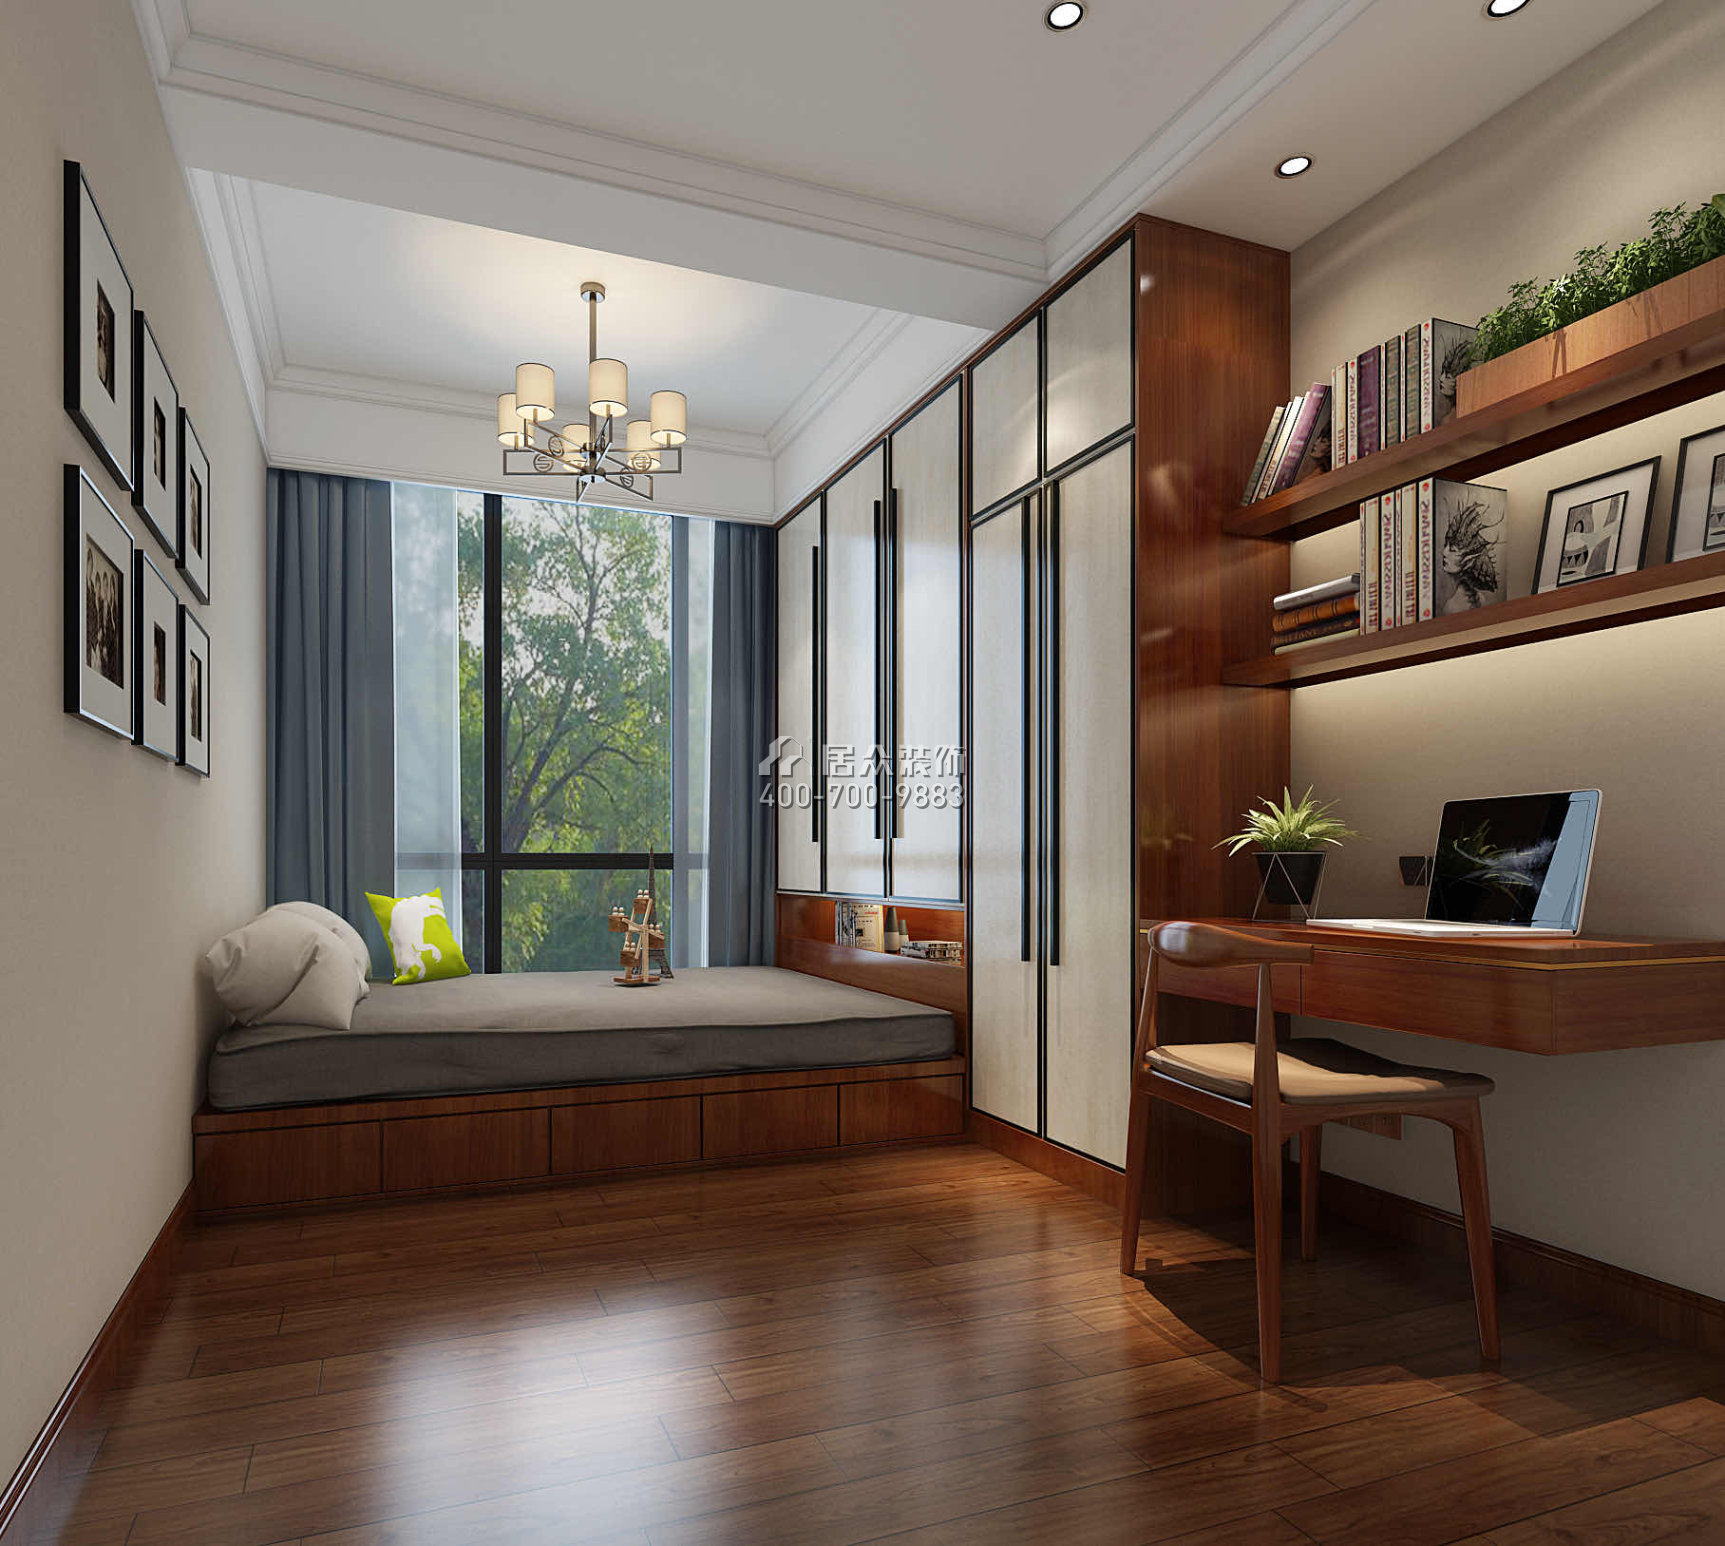 嘉华星际湾180平方米中式风格平层户型卧室书房一体装修效果图